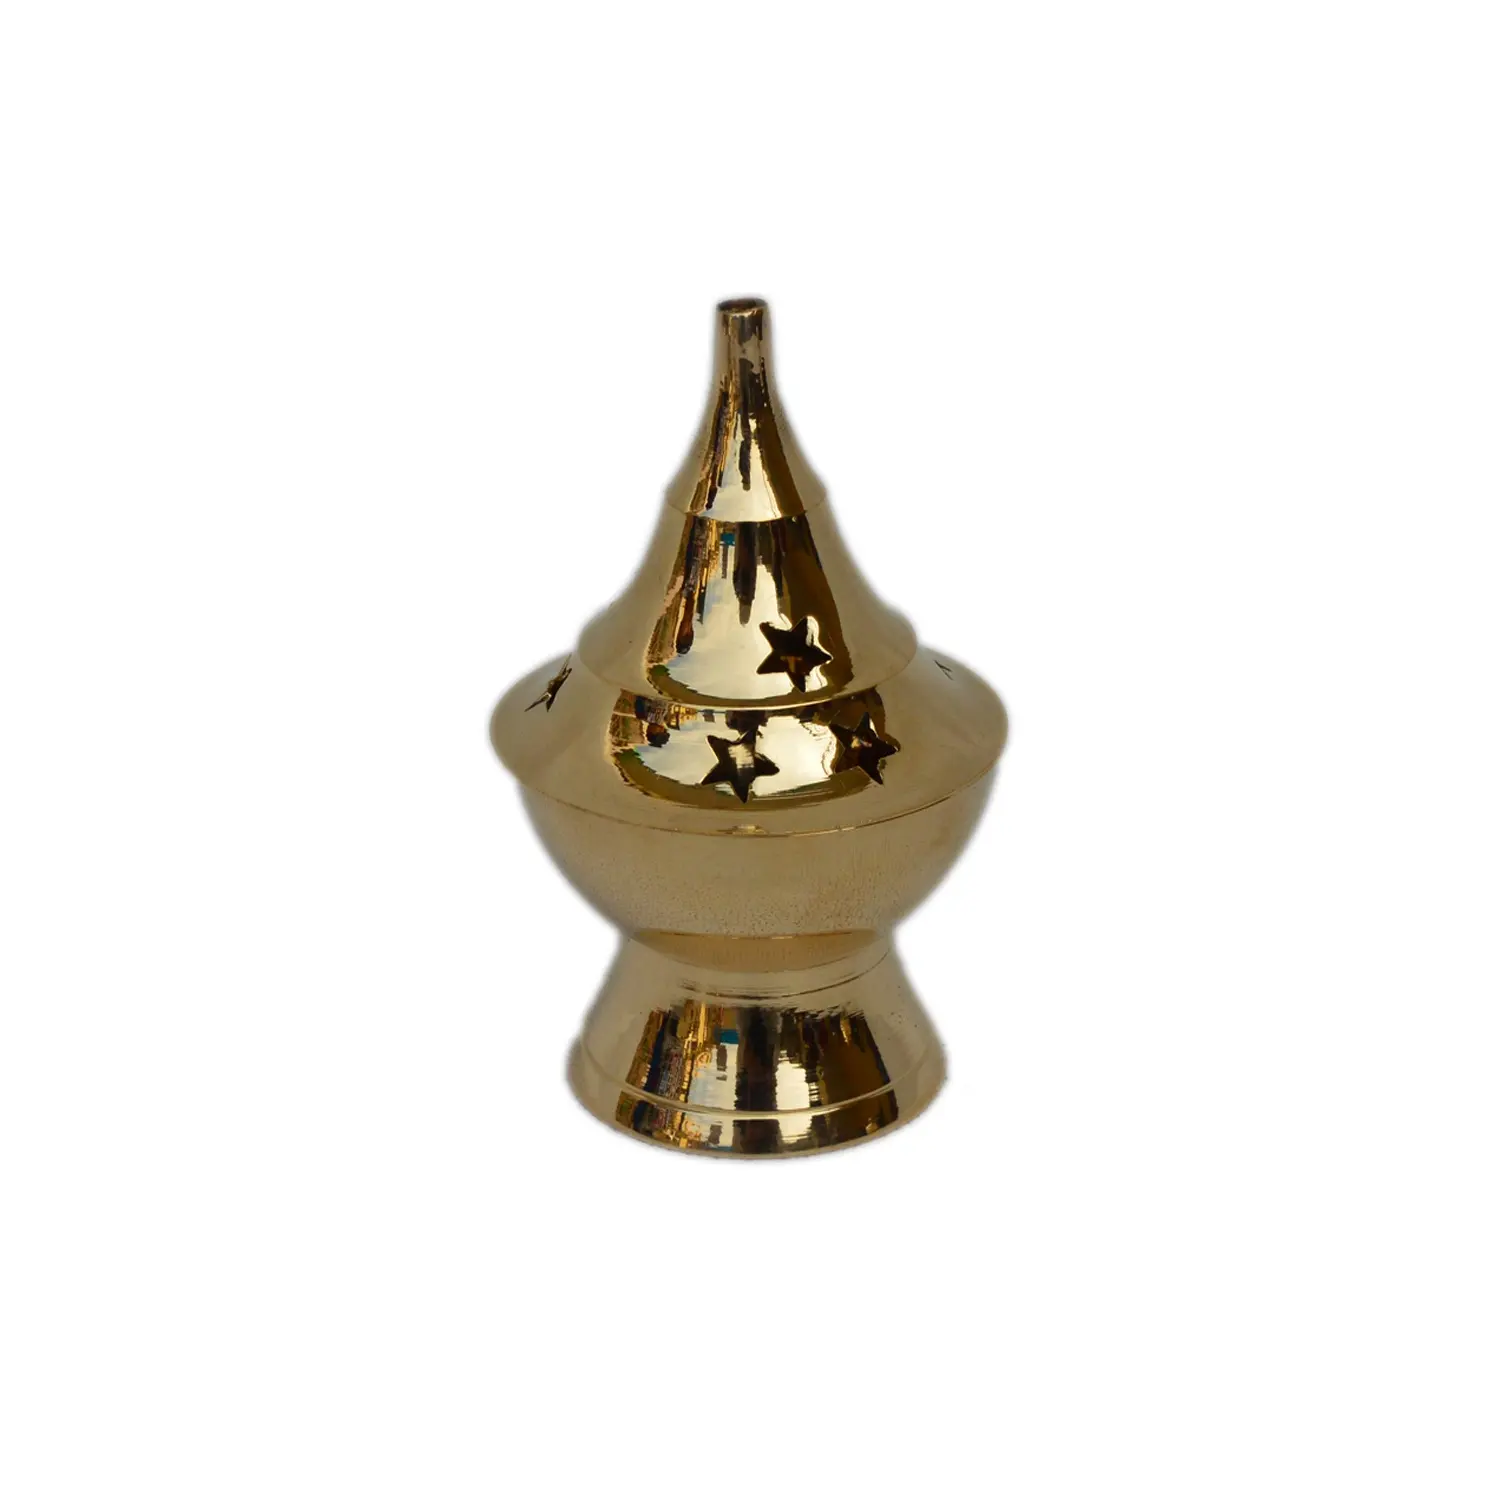 Decor Shiny Polished Finishing Design Traditional Brass Fragrance Sprinkler Golden Colored Incense Burner